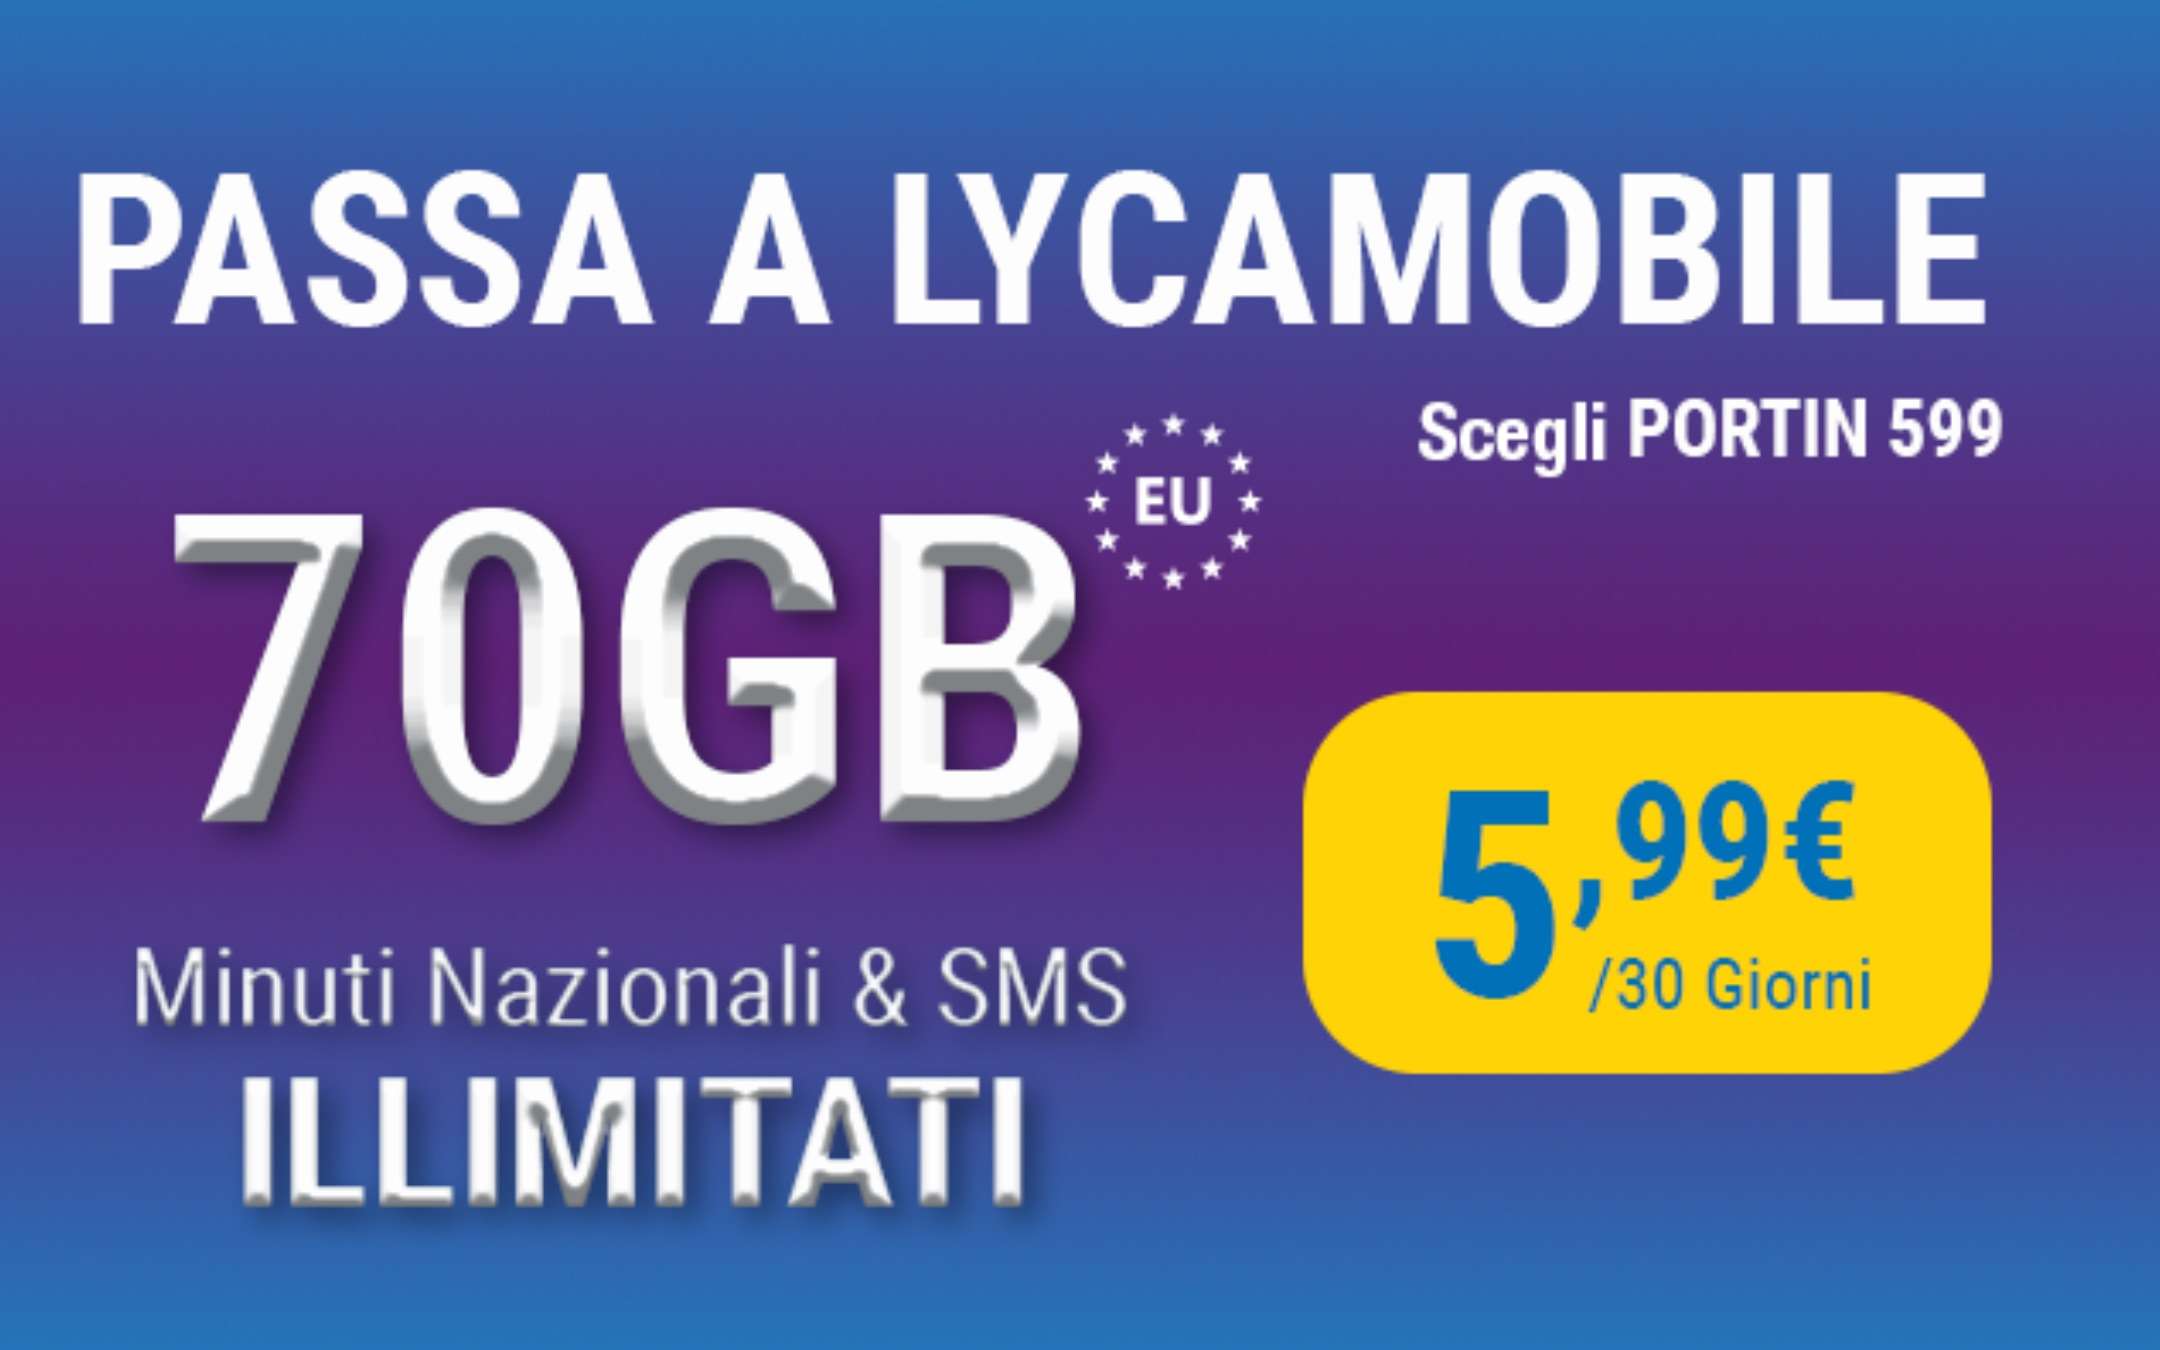 Lyca Mobile: PortIN promo con 70GB a 5,99€ al mese